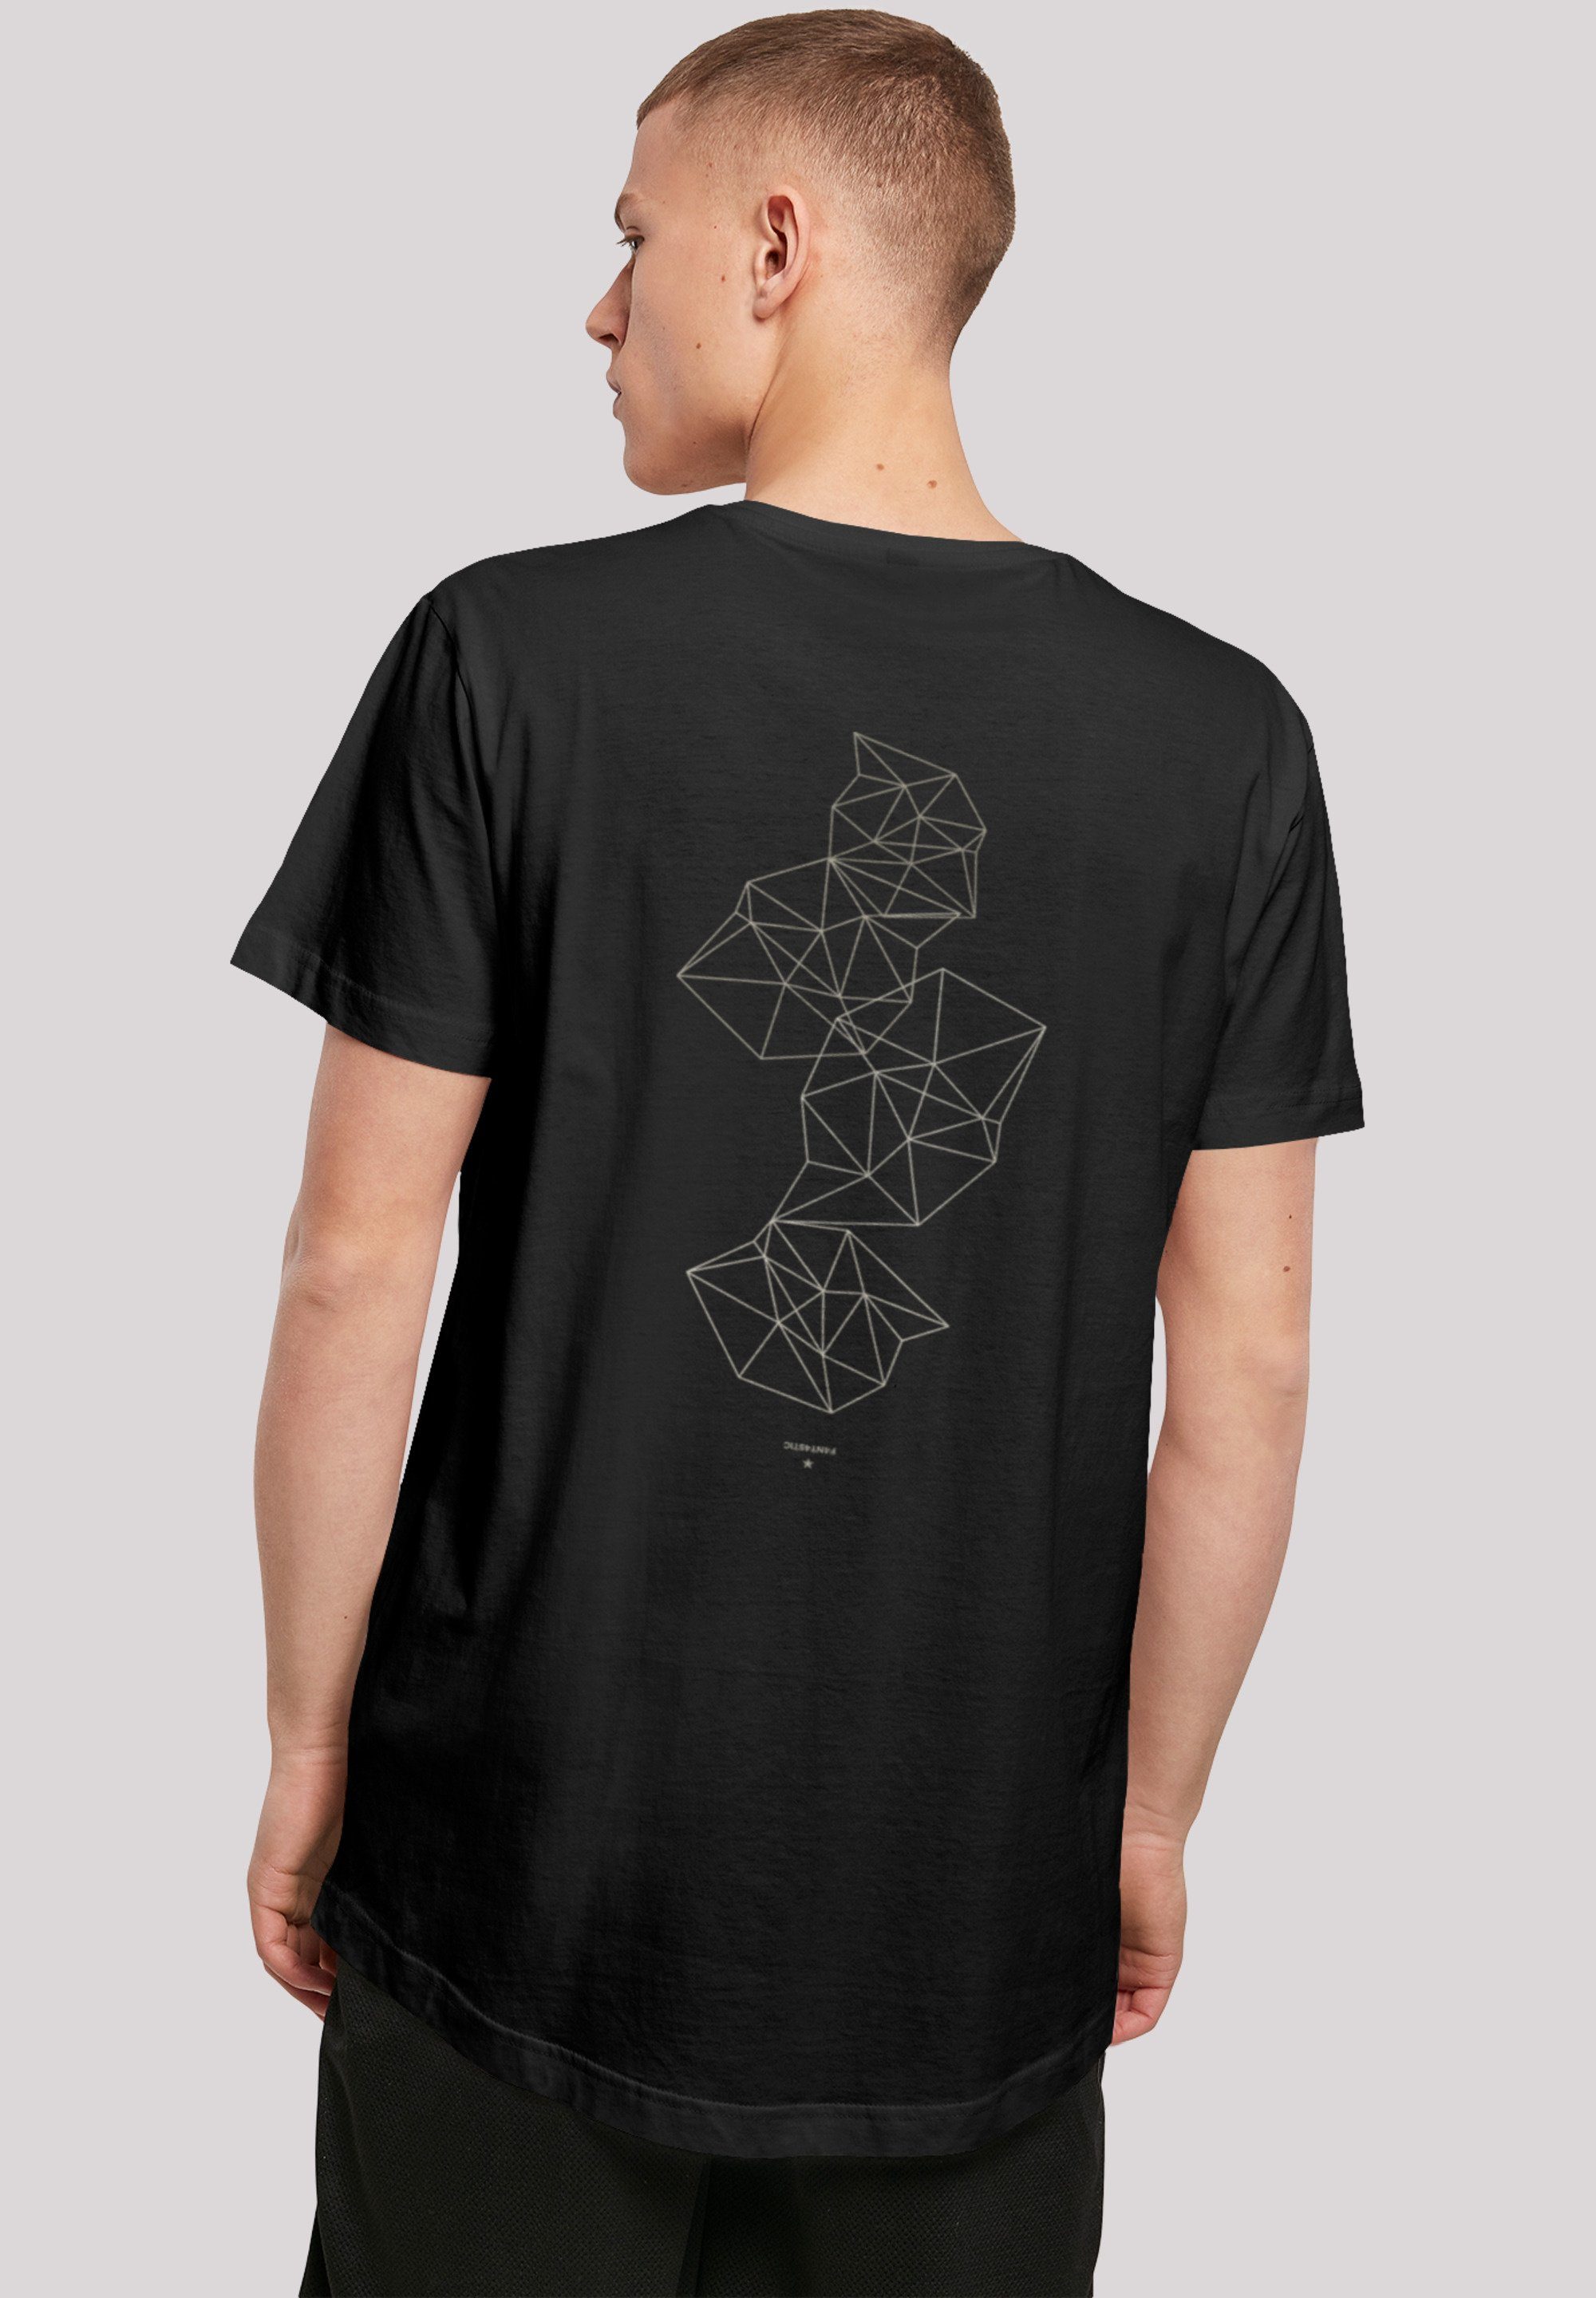 Niedrigster Preis im Land! F4NT4STIC T-Shirt Print Abstract Geometrics